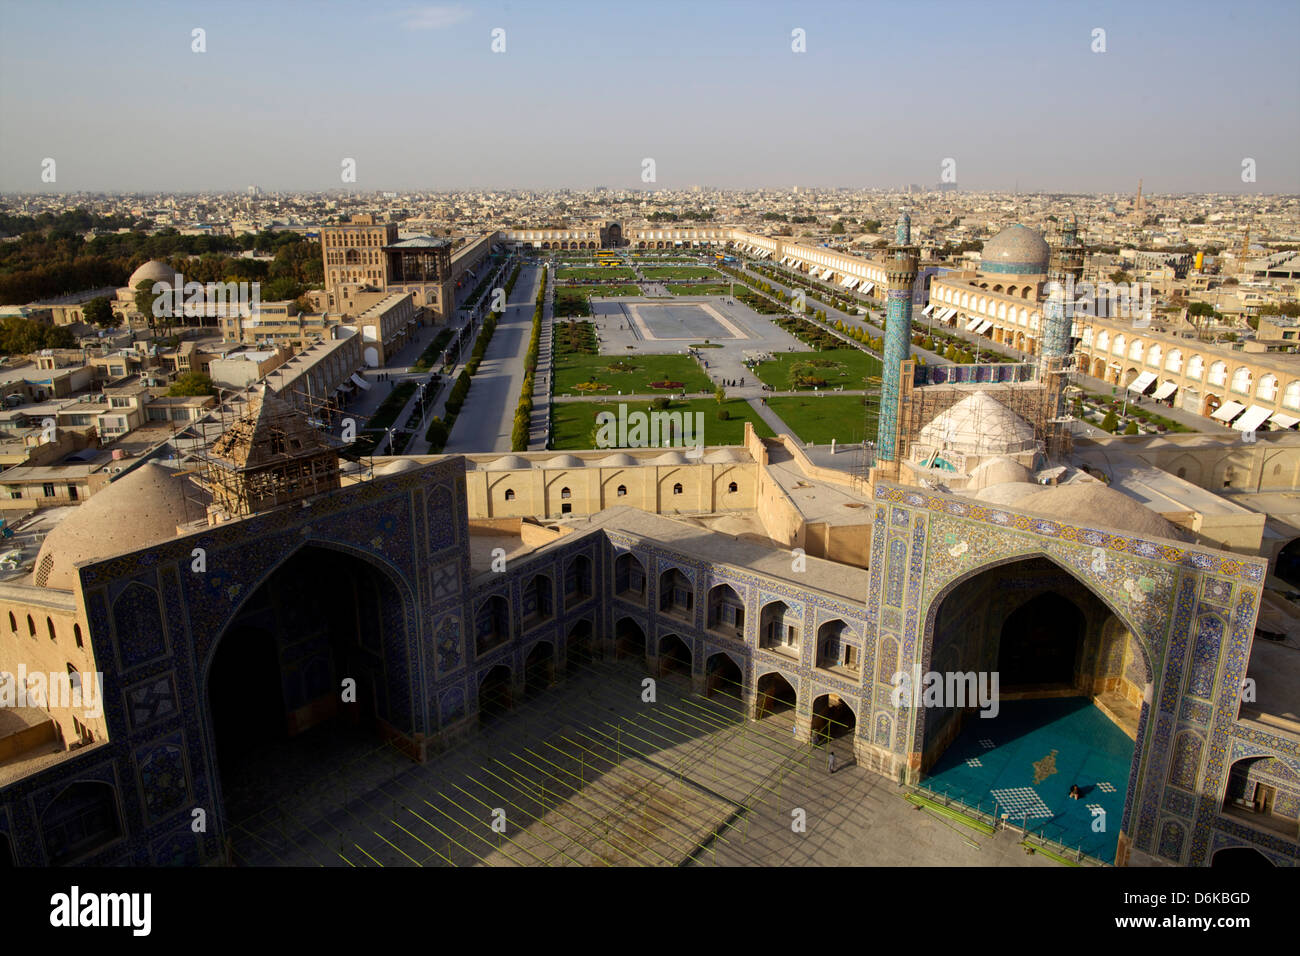 Vue depuis le grand minaret sur la Place Royale, Site de l'UNESCO, Grande Mosquée, Isfahan, Iran, Moyen-Orient Banque D'Images